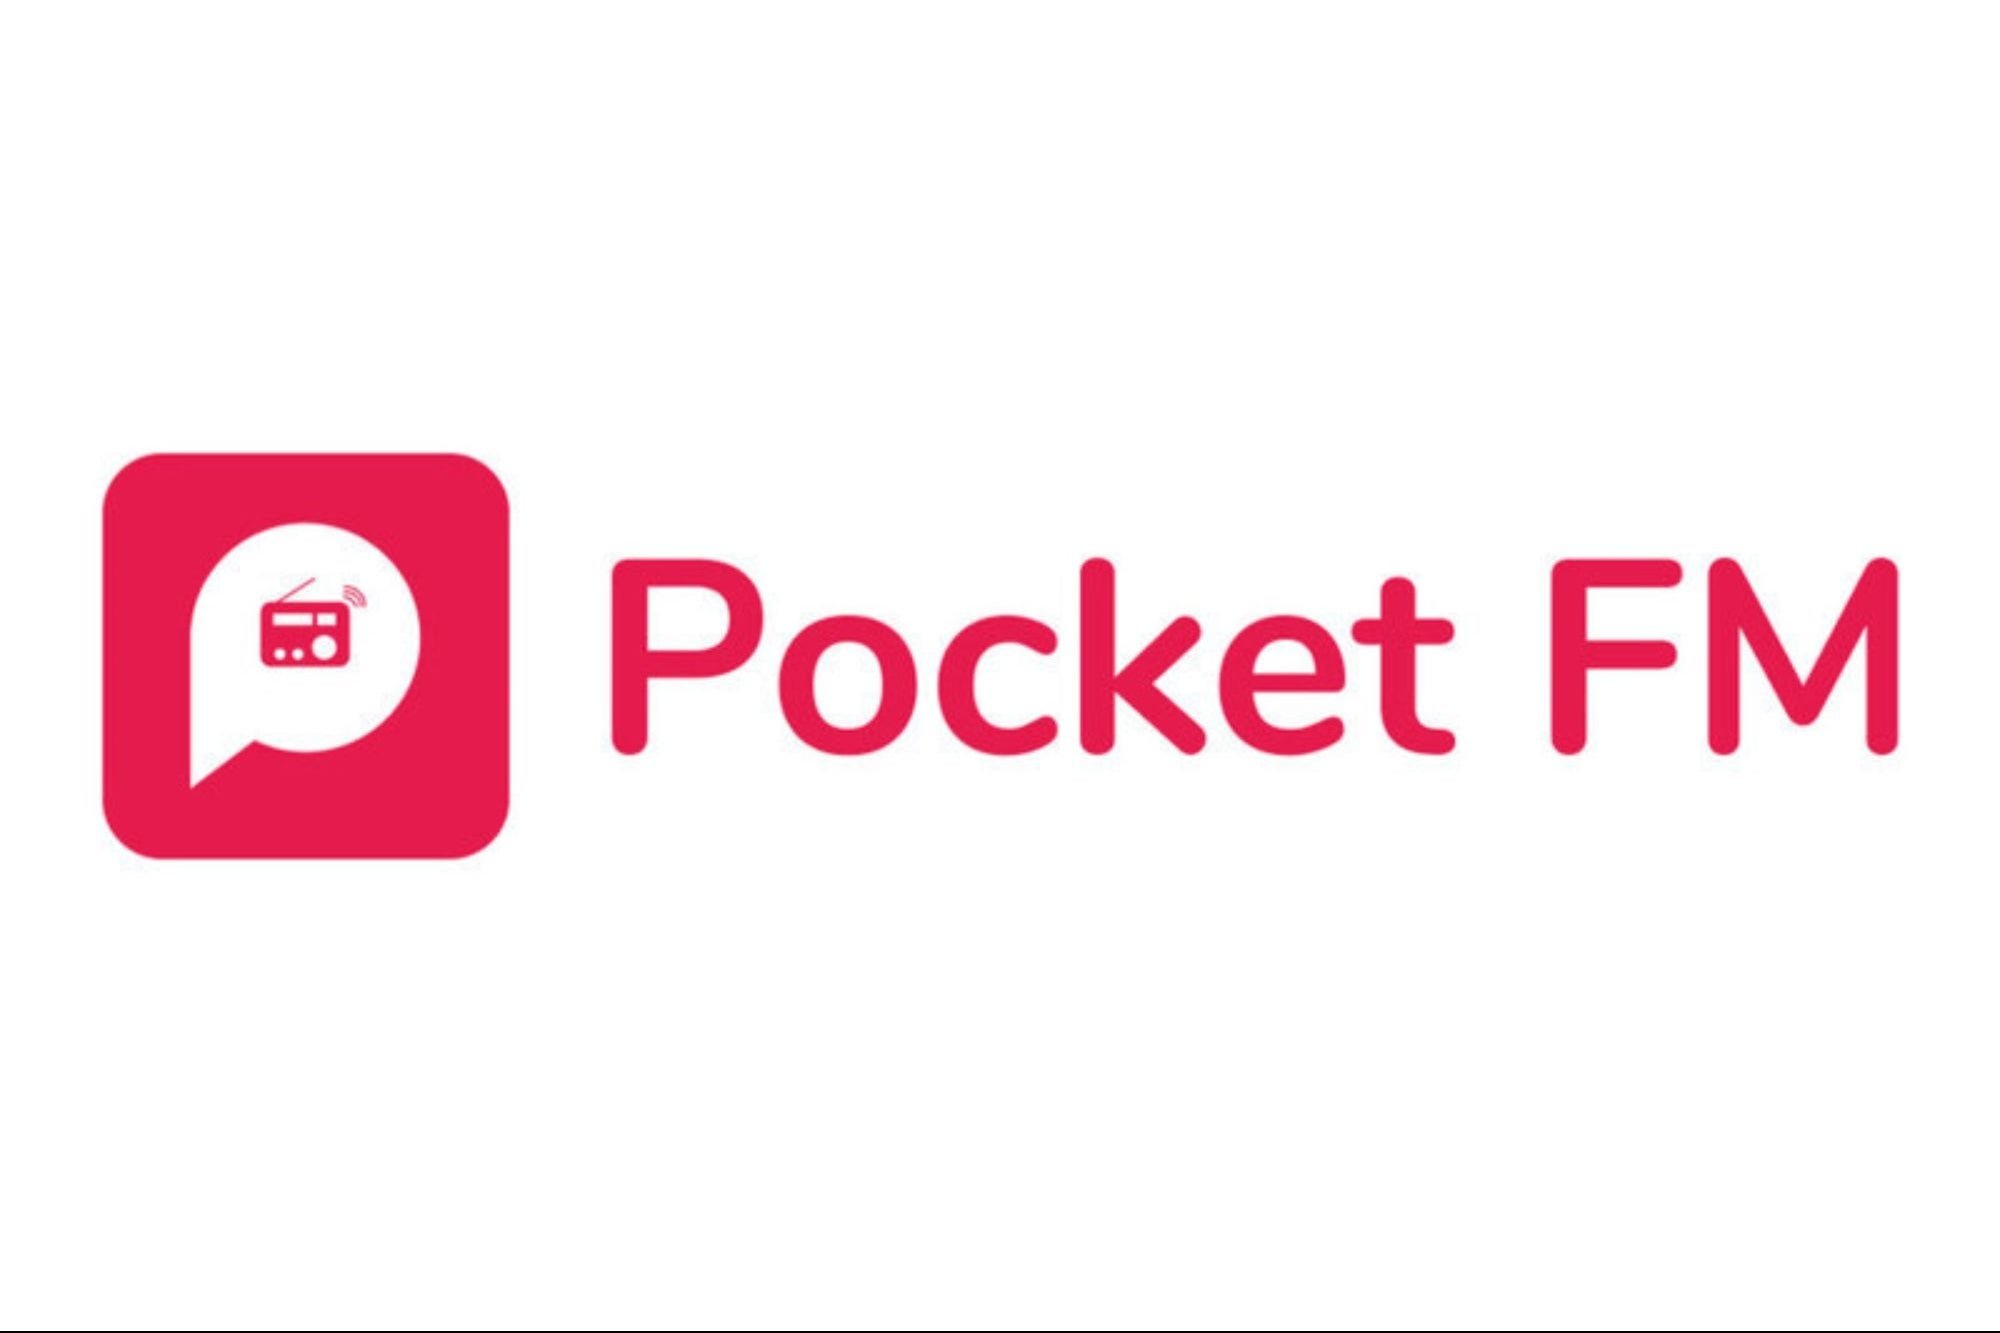 دسترسی نامحدود به پادکست و موزیک با برنامه های Pocket FM و Kuku FM